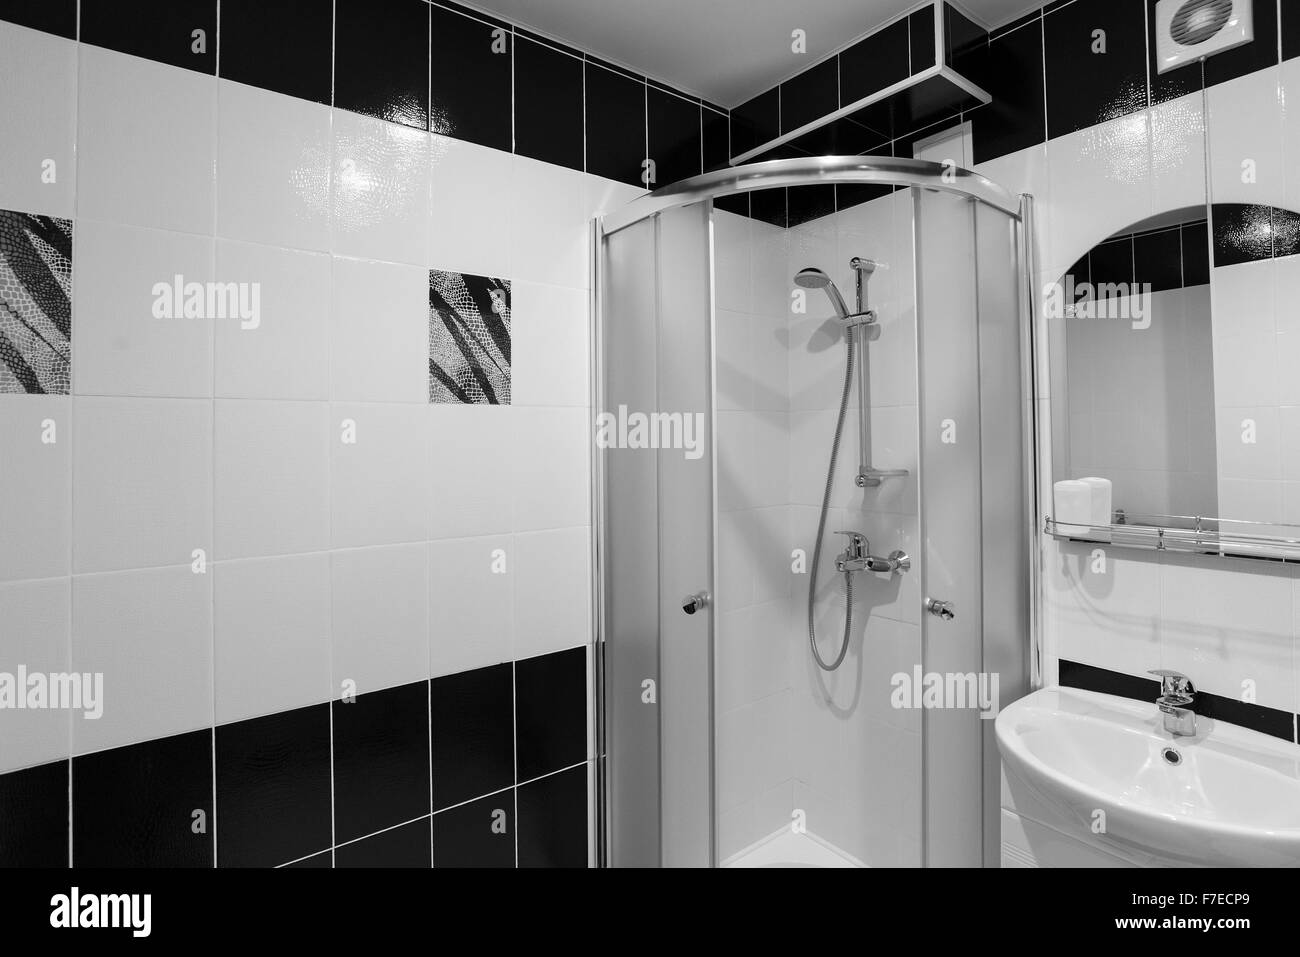 L'intérieur des douches avec toilettes sont en noir et blanc Banque D'Images